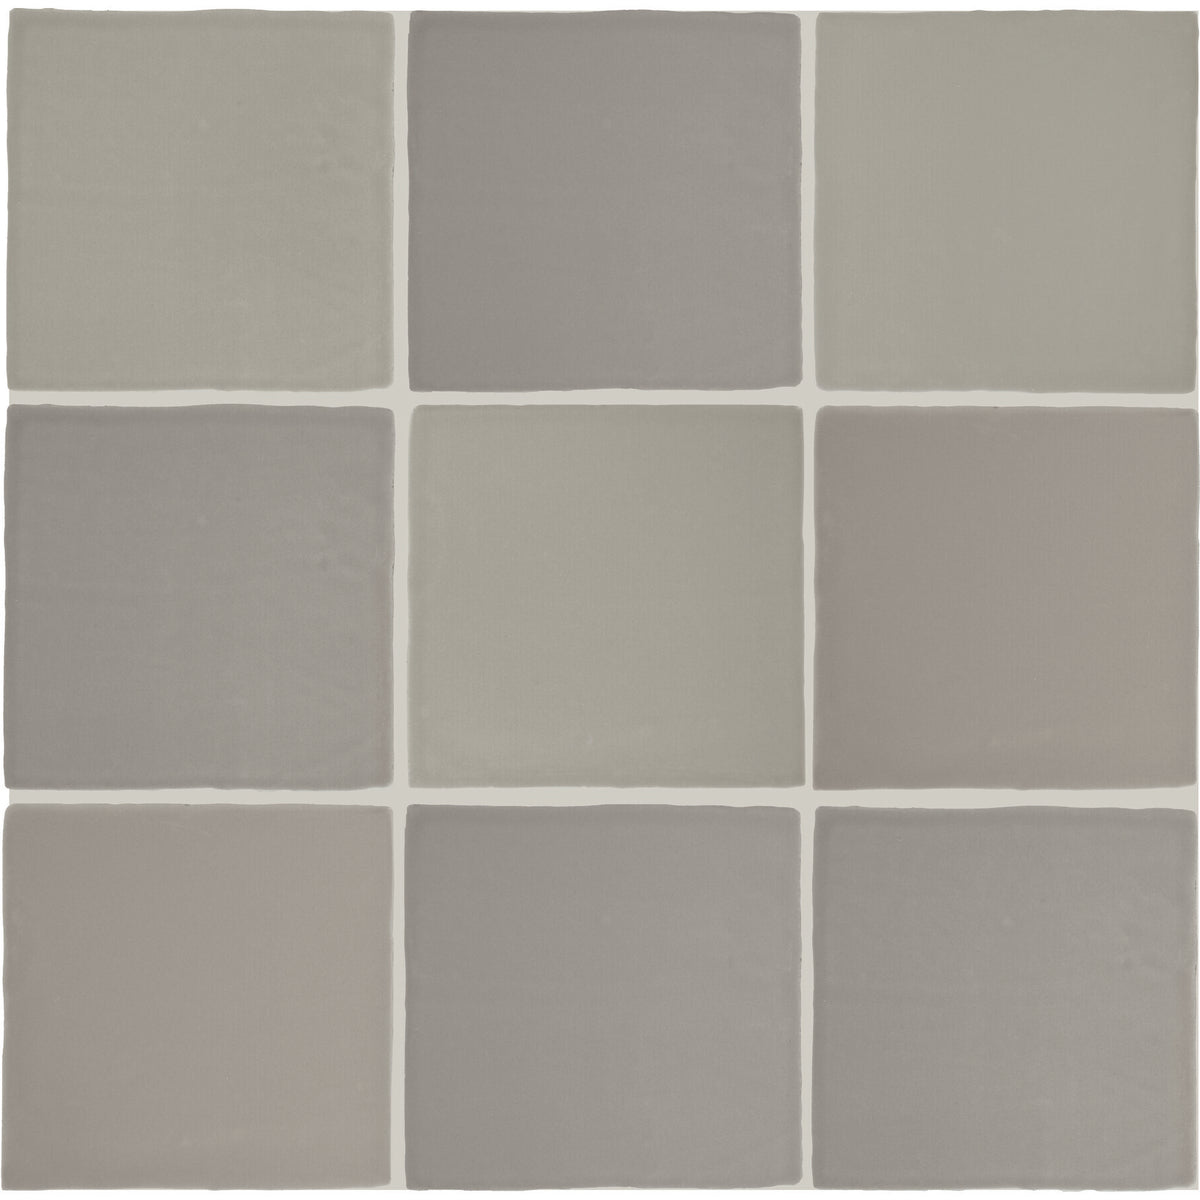 Daltile - Farrier - 5 in. x 5 in. Glazed Ceramic Wall Tile - Dartmoor Grey Variation